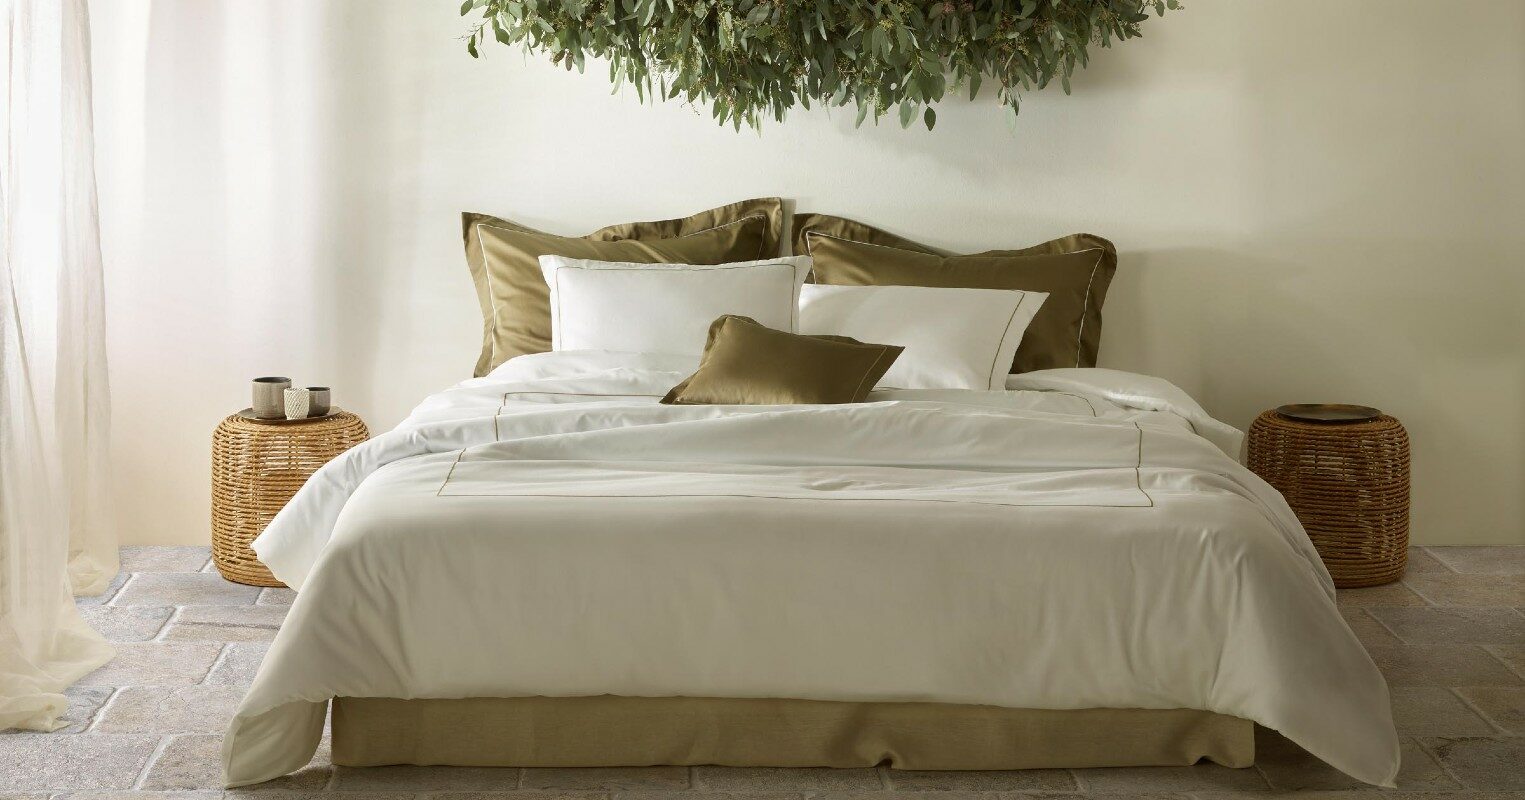 Sängkläder och handdukar för hotellatmosfär | VILLOR Dekoration